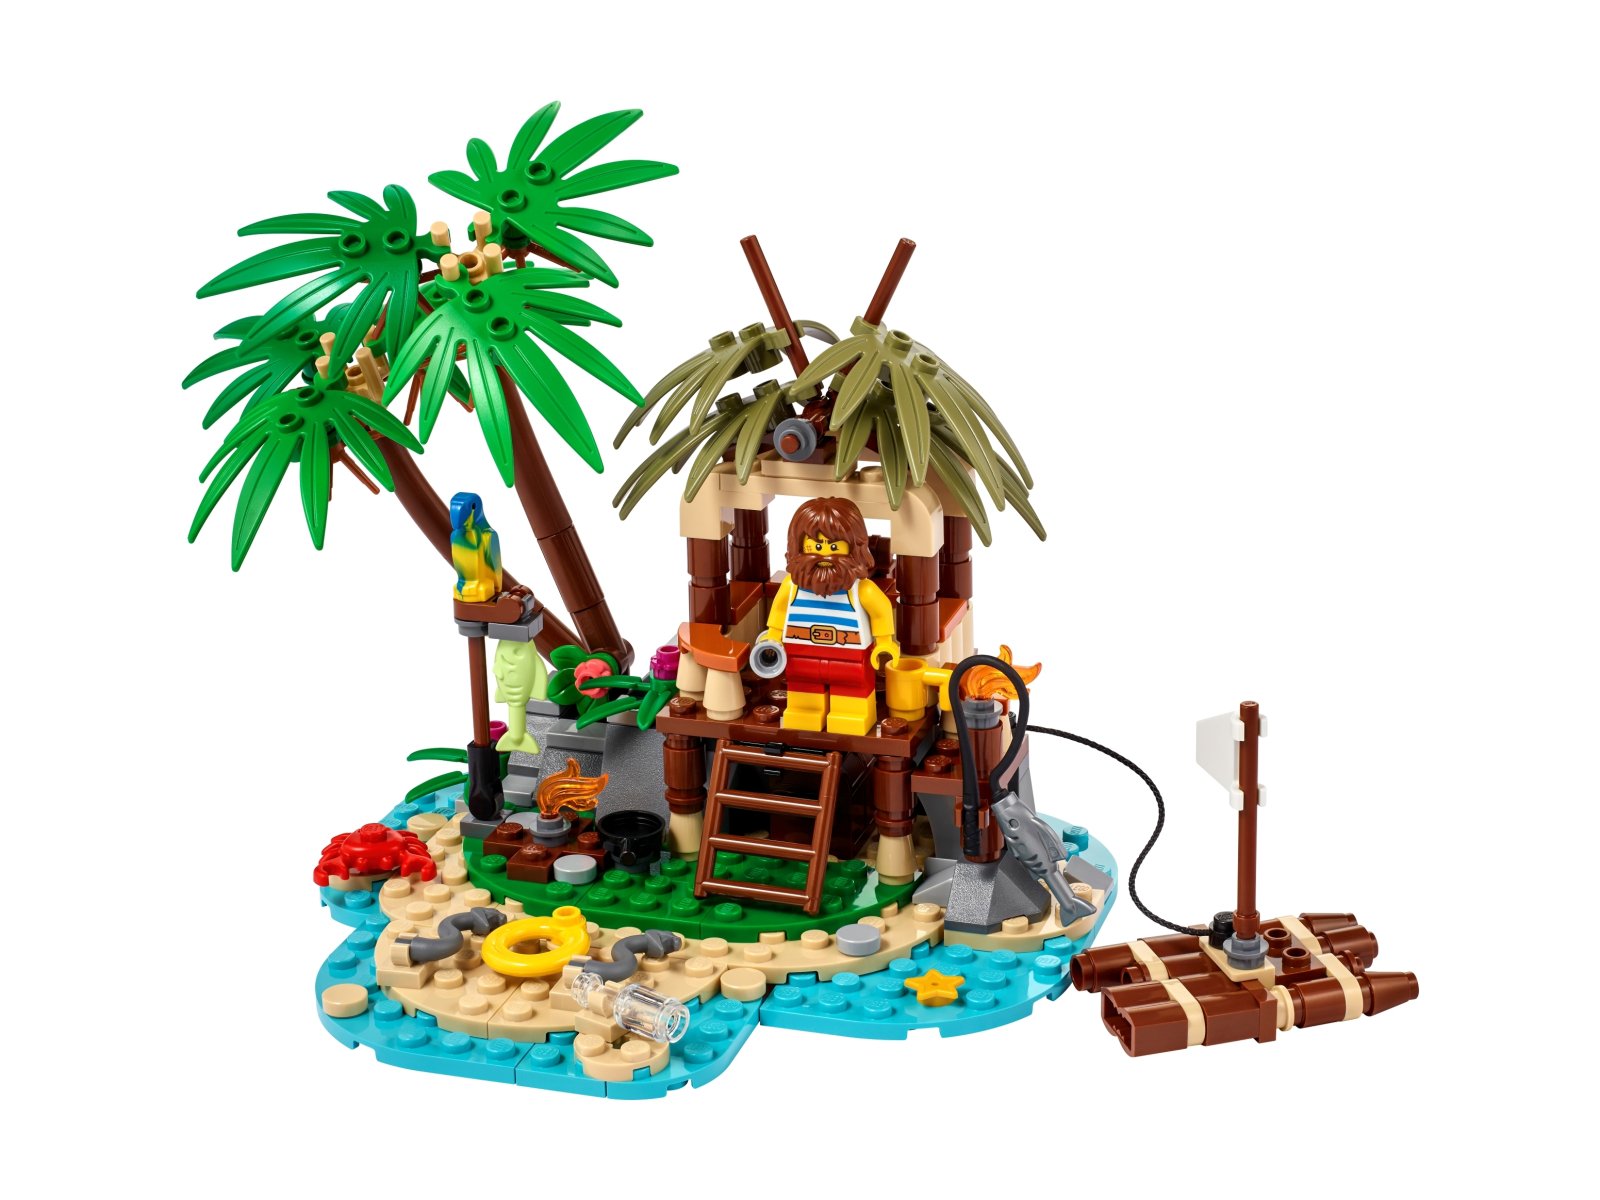 LEGO Rozbitek Ray 40566